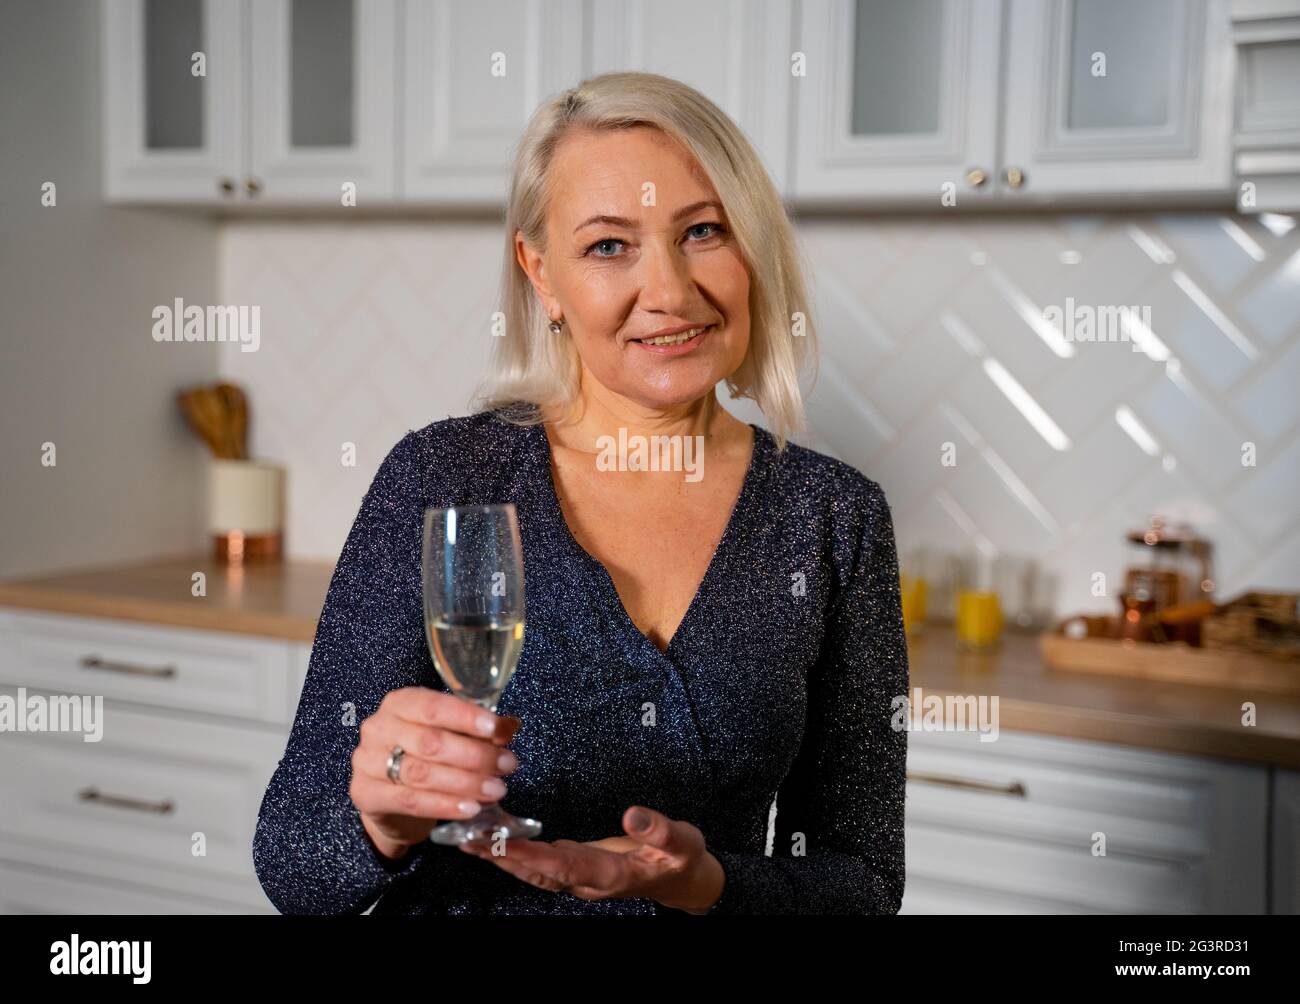 Portrait de grand-mère souriante dans une belle robe de fête debout dans une cuisine élégante tenant un verre de champagne planification pour faire un toast et Wish Joyeux anniversaire. Concept de célébration Banque D'Images